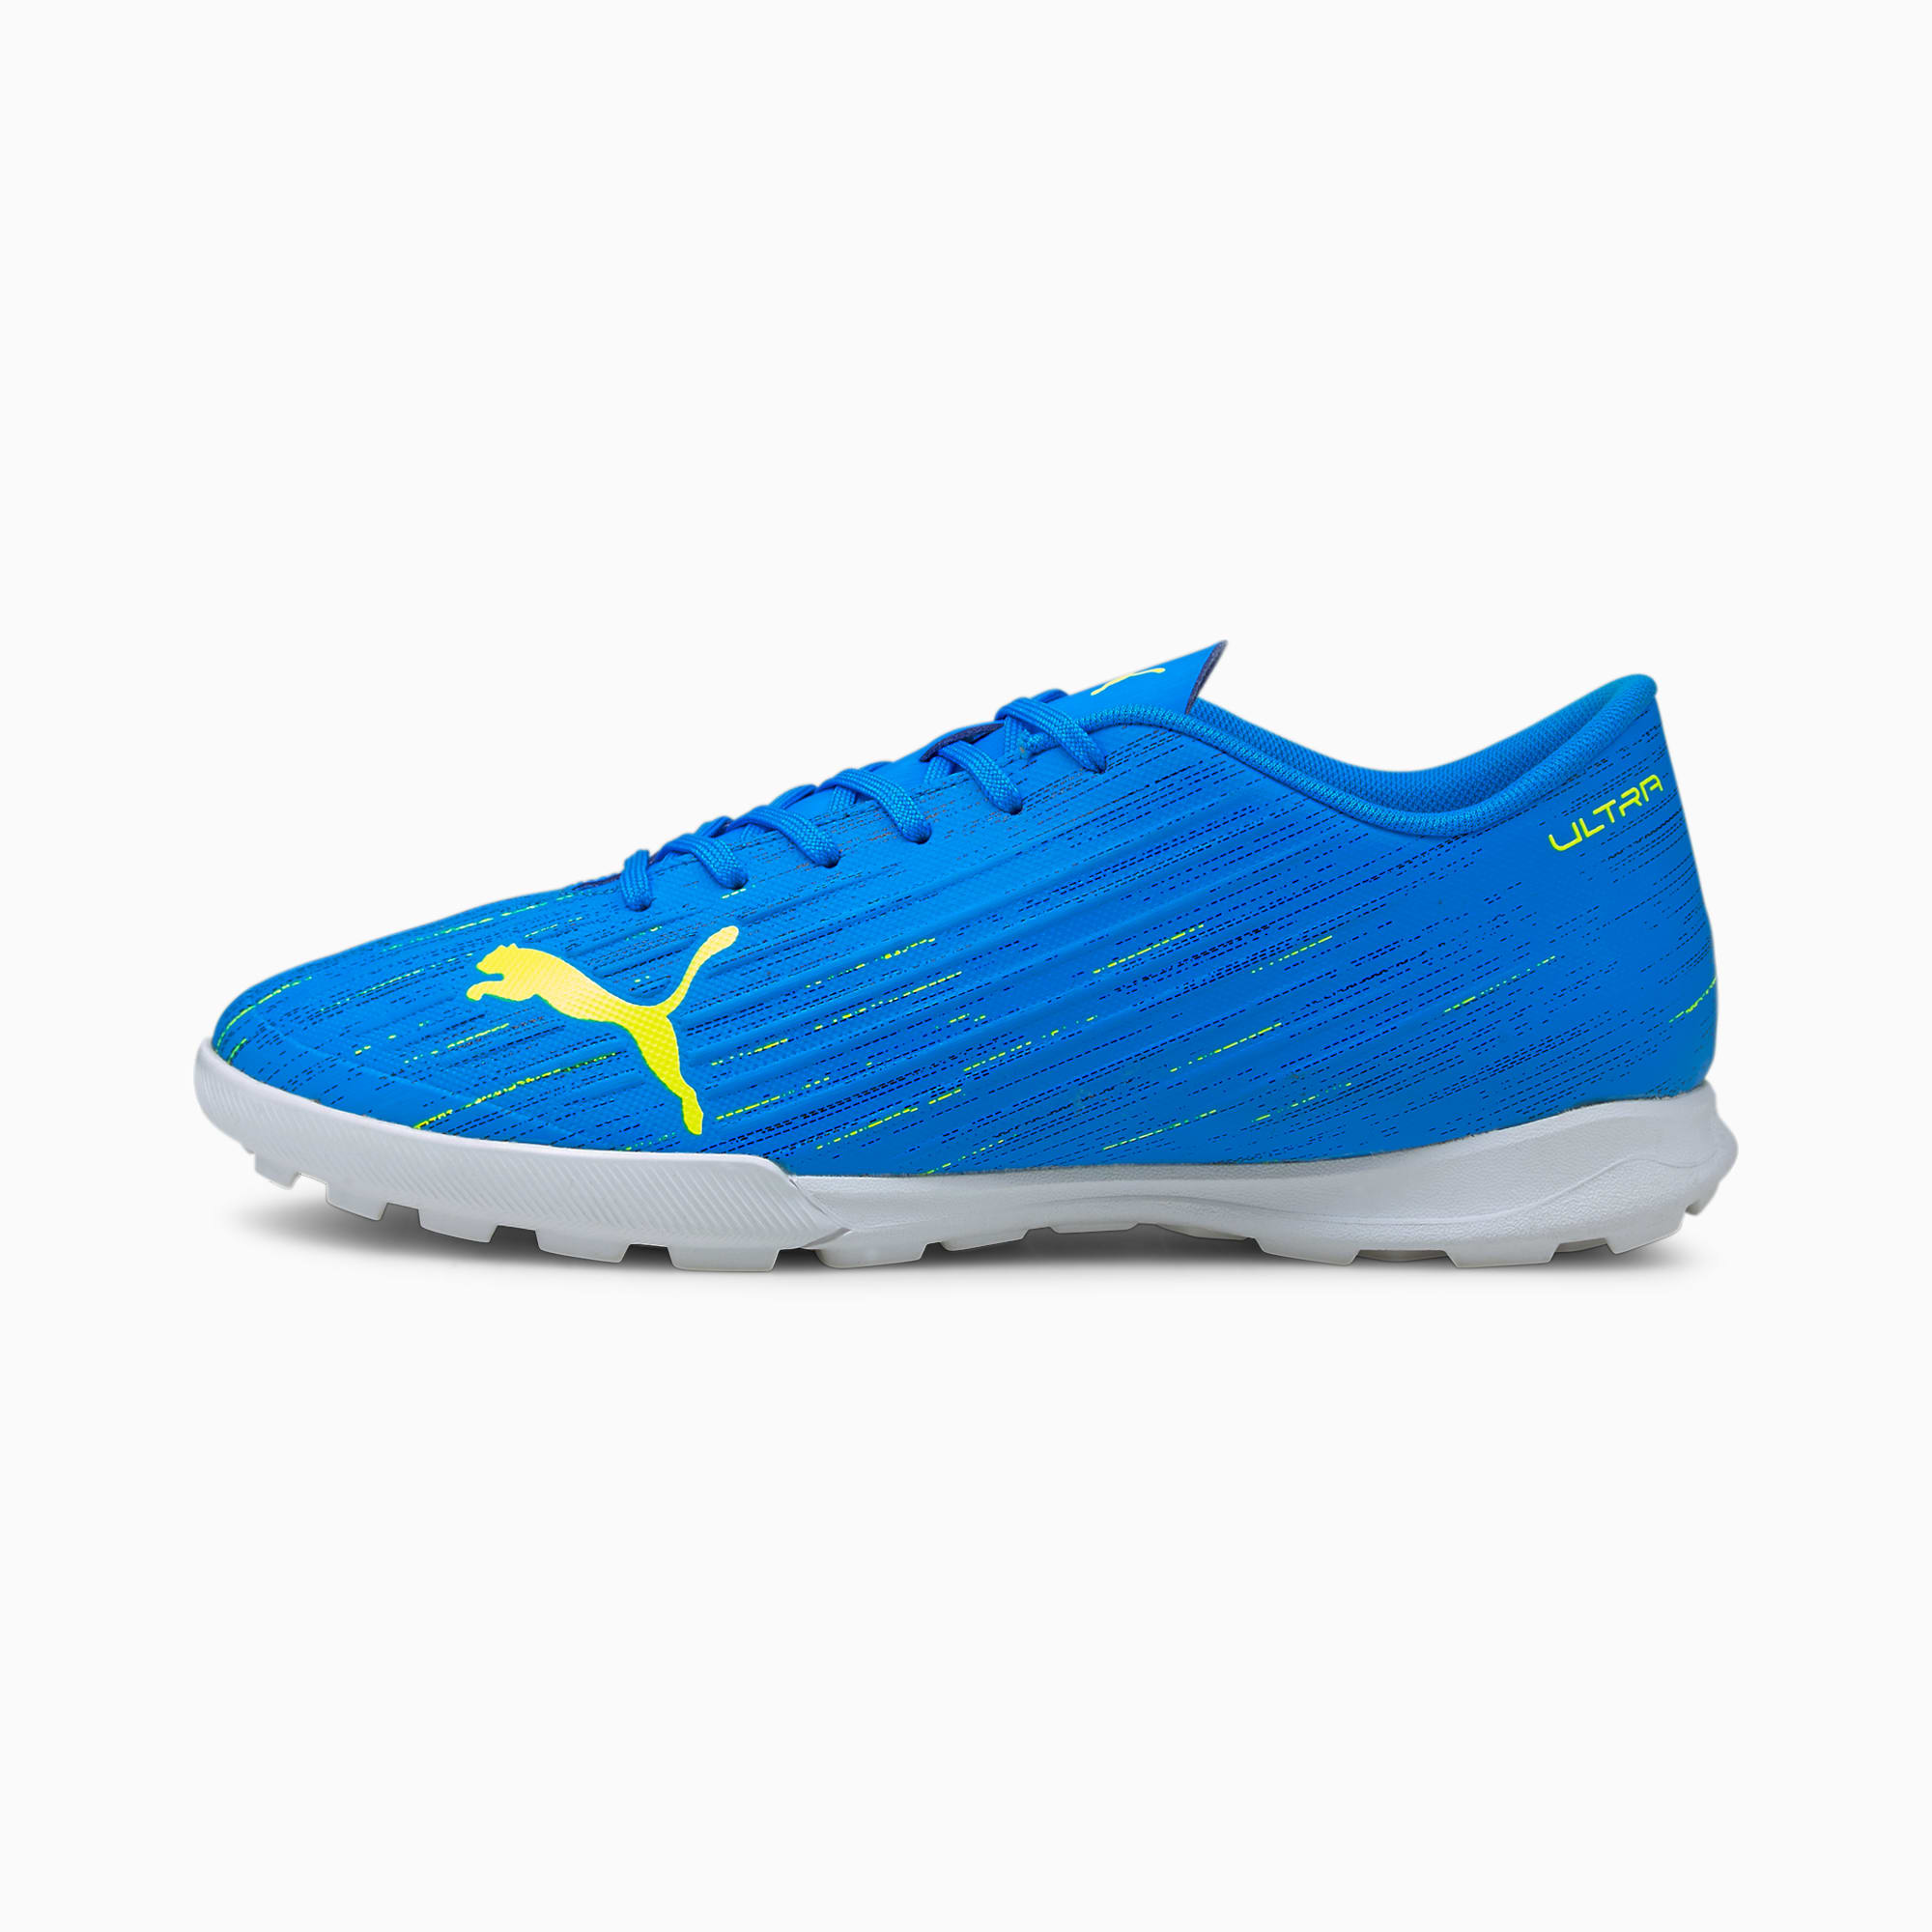 PUMA Chaussures de football ULTRA 4.2 TT homme, Bleu/Jaune, Taille 42, Chaussures